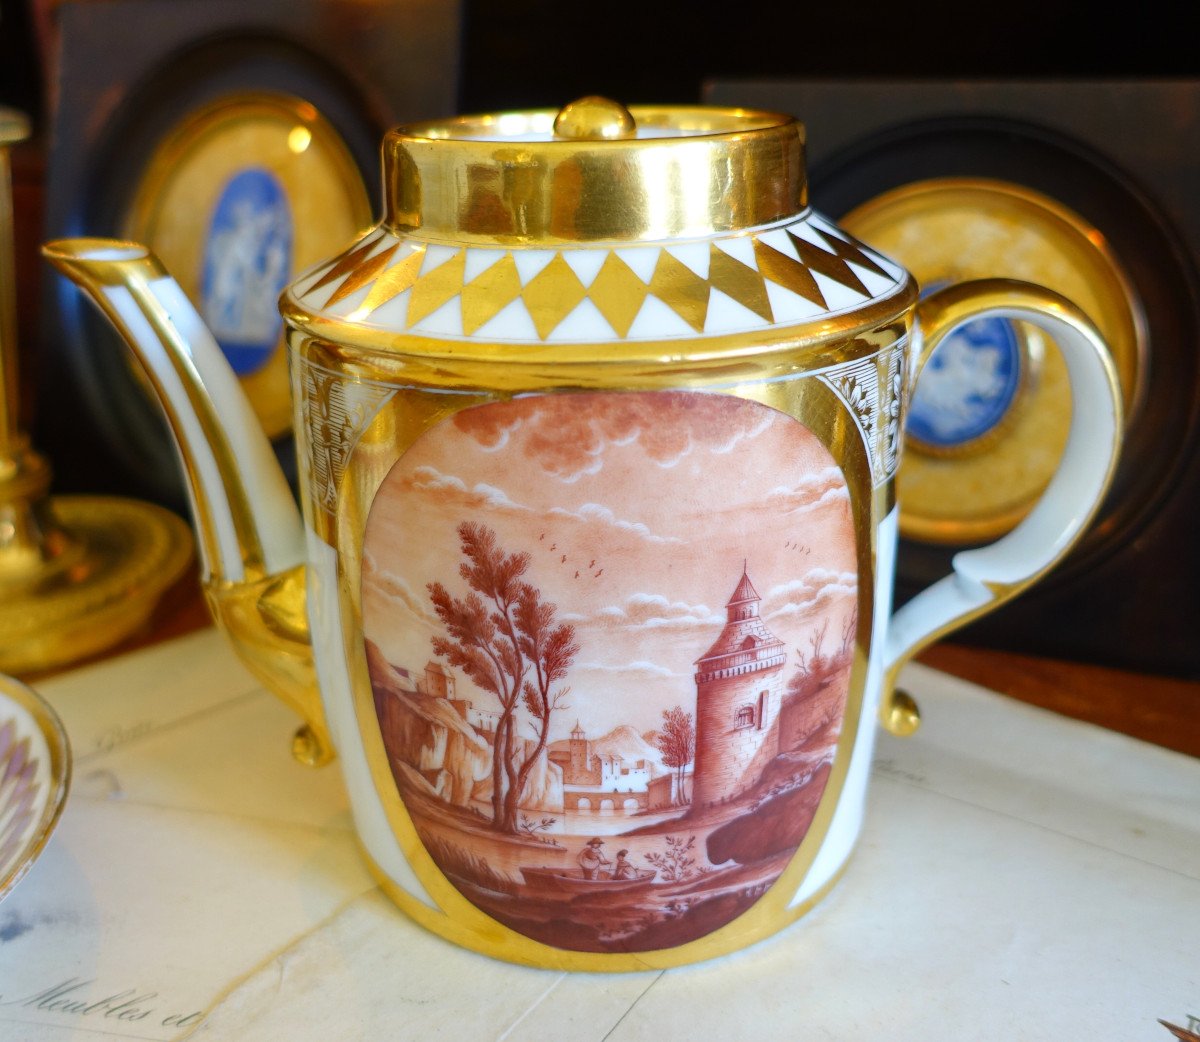 Schoelcher Manufacture - Directoire Empire Period Porcelain Teapot - Camaieu Landscapes